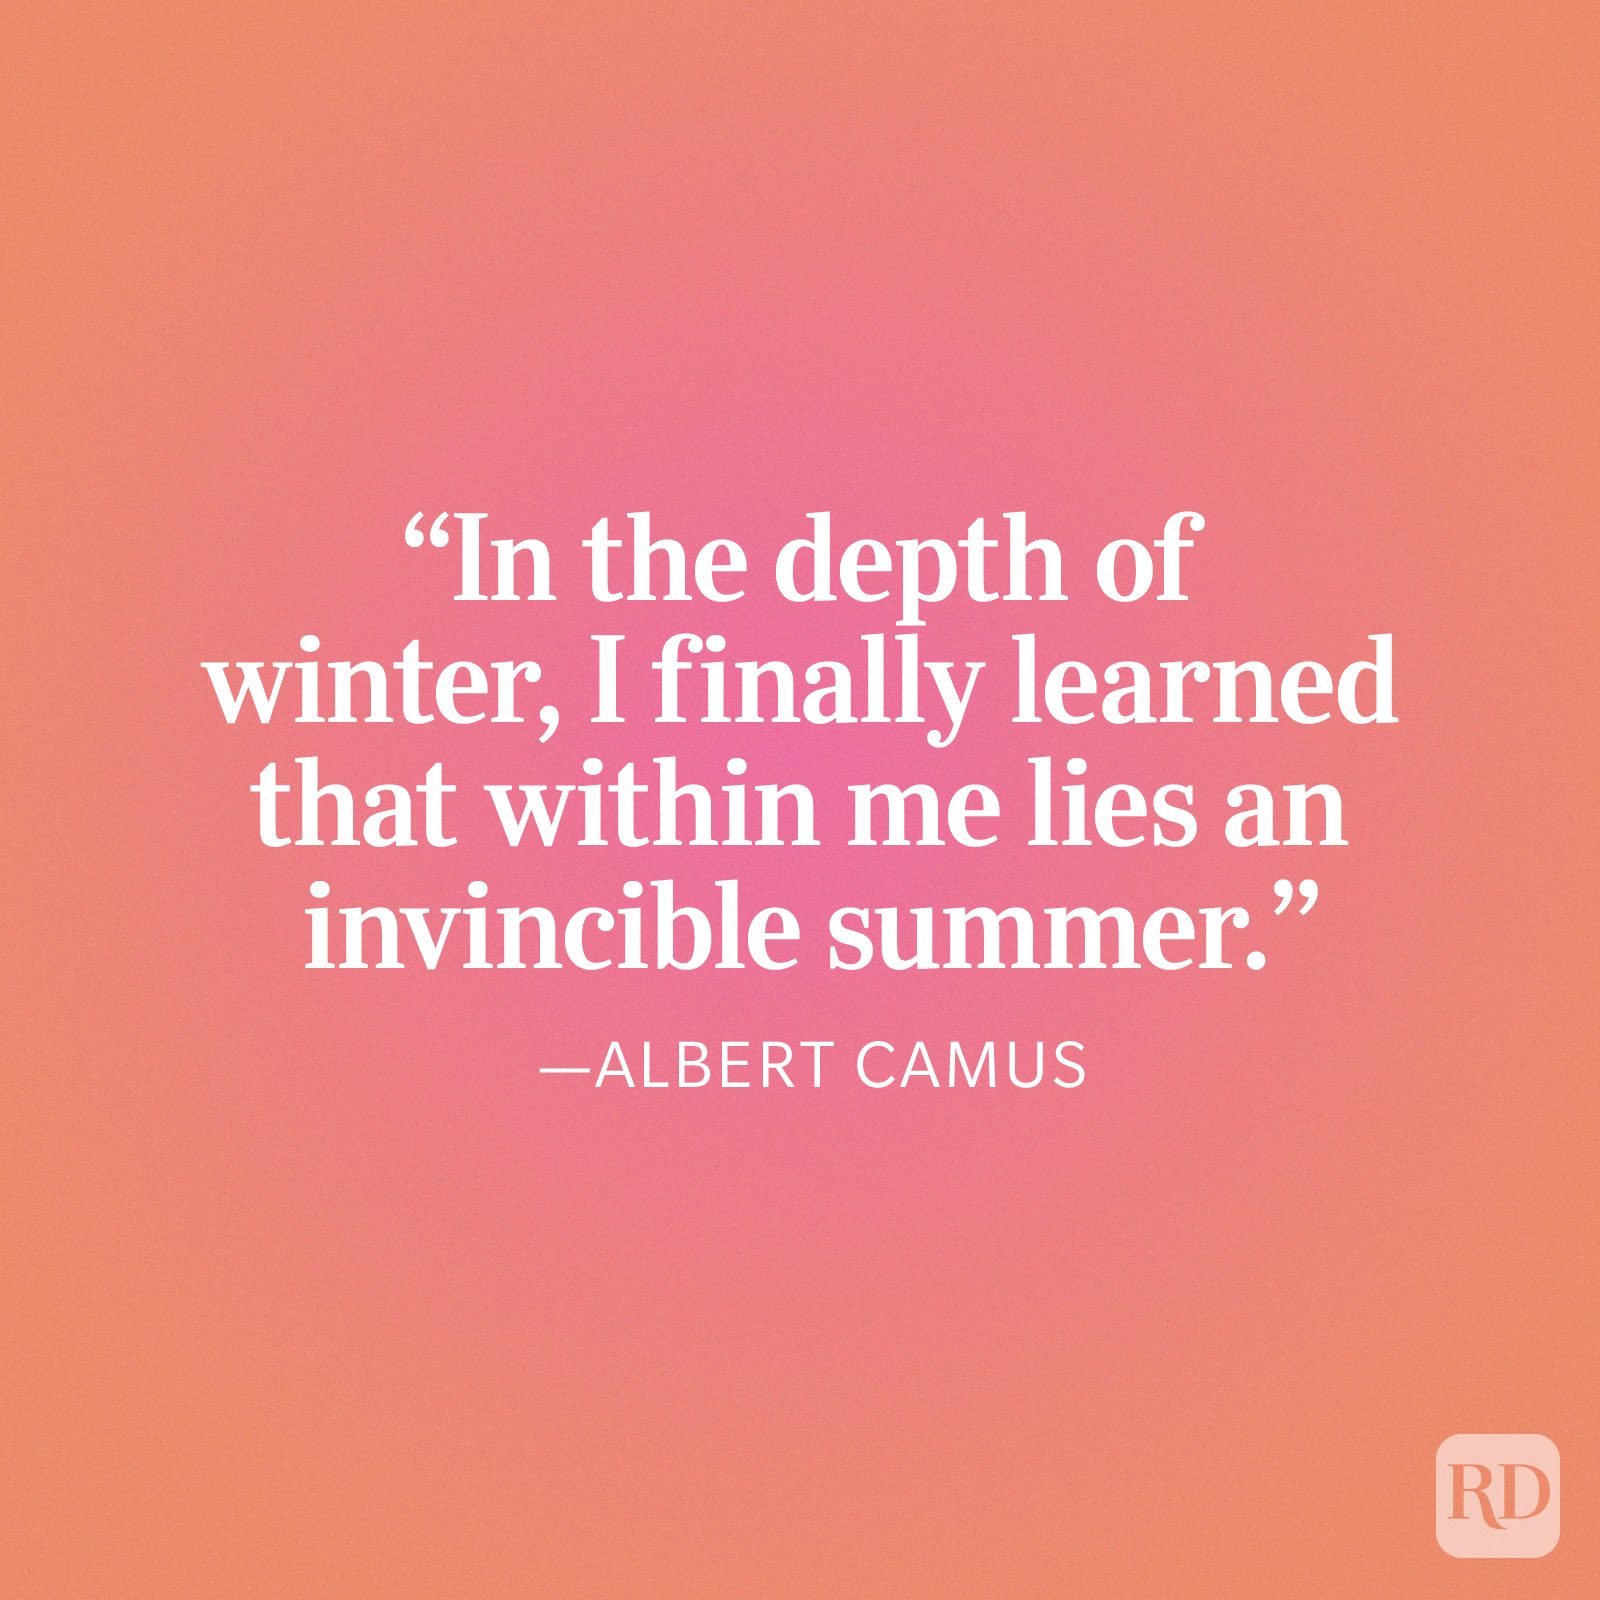 Albert Camus Invincible Summer Quote